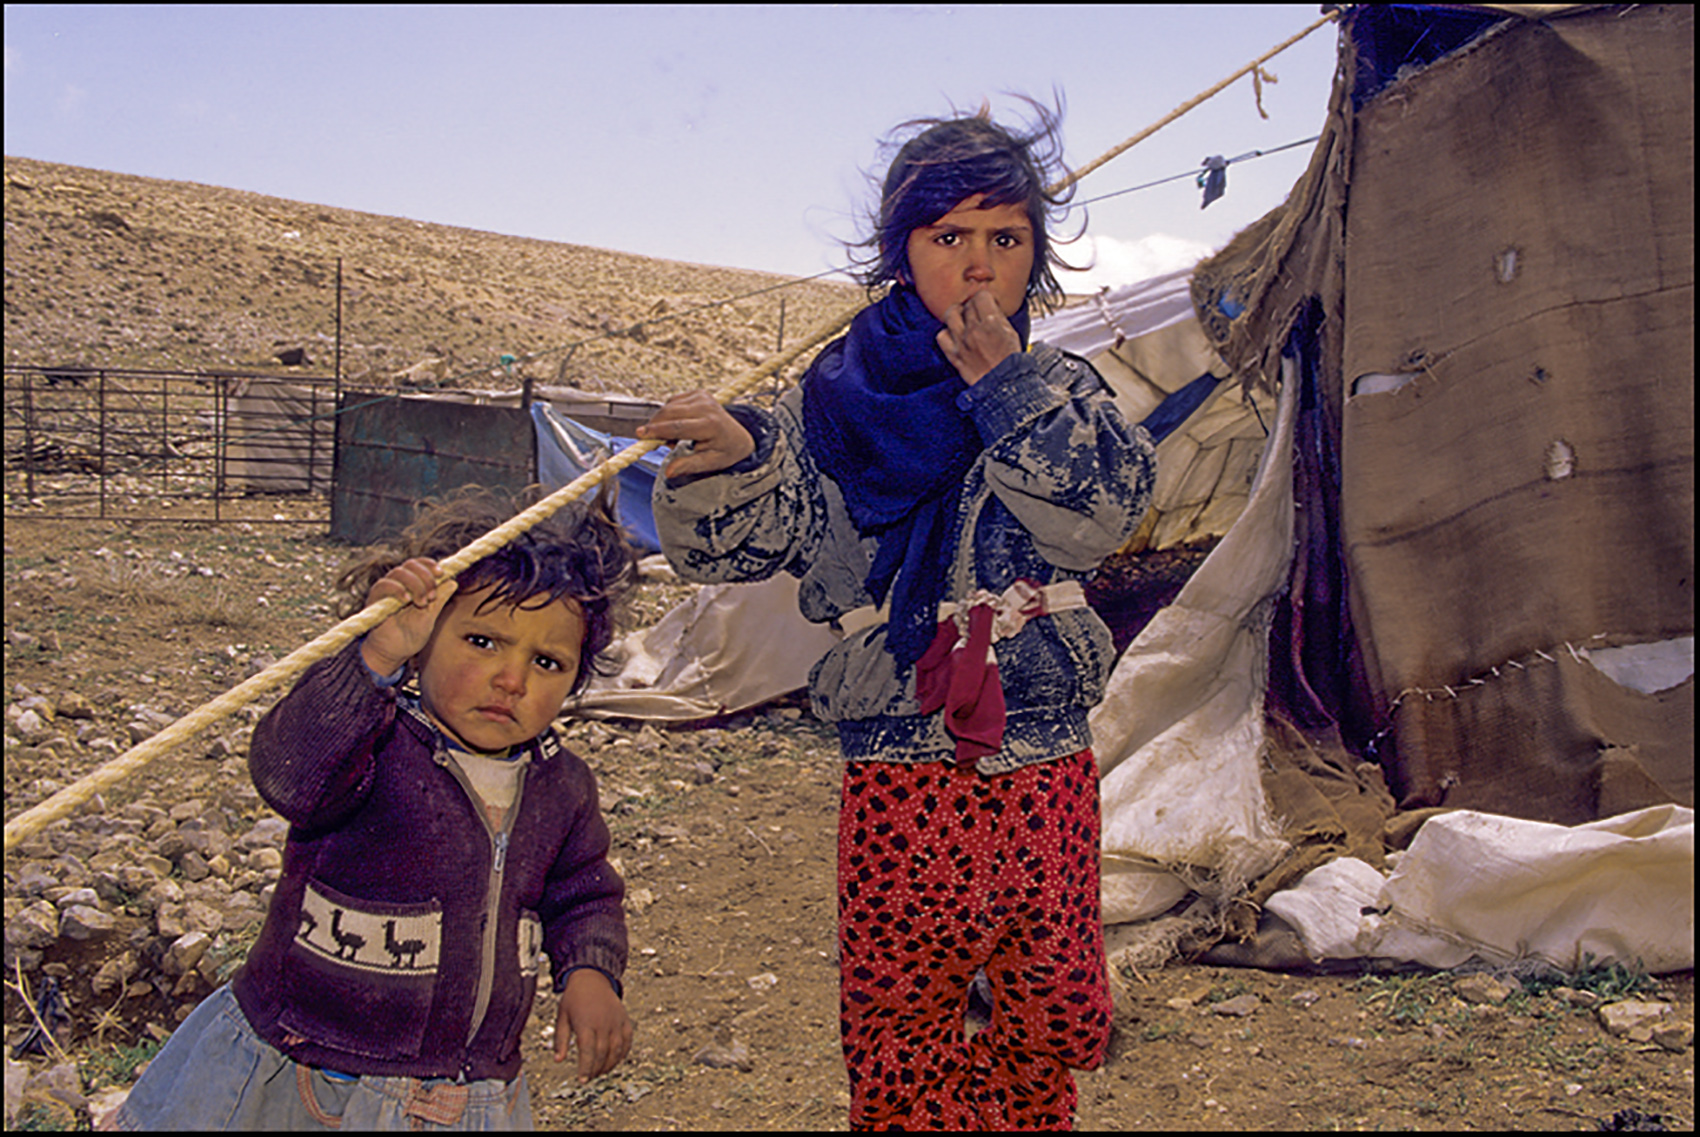 Bedouin children, Iran